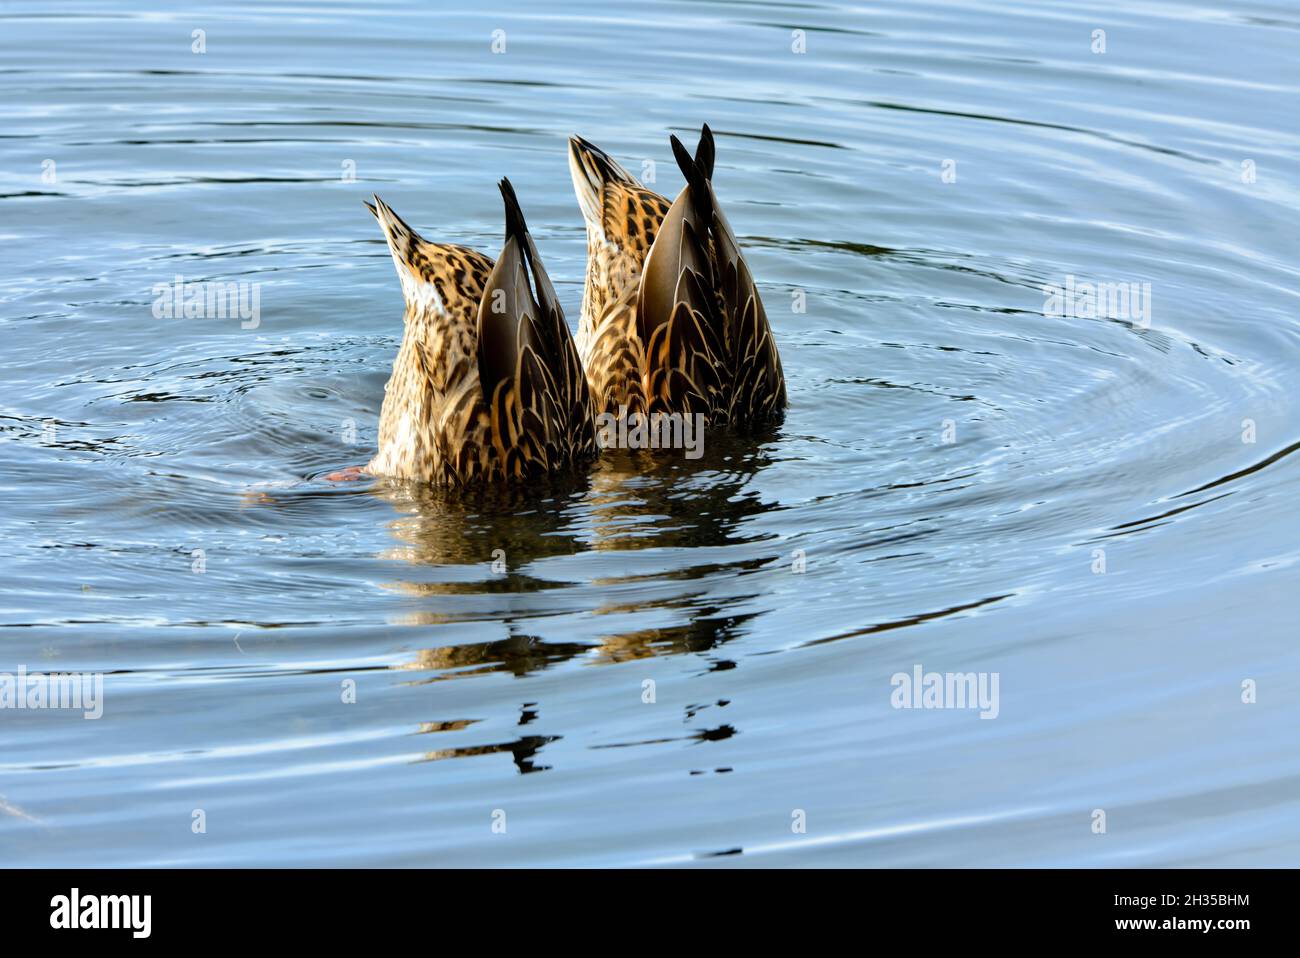 Deux canards colverts femelles se nourrissant dans les eaux peu profondes de l'étang du castor dans les régions rurales de l'Alberta au Canada. Banque D'Images